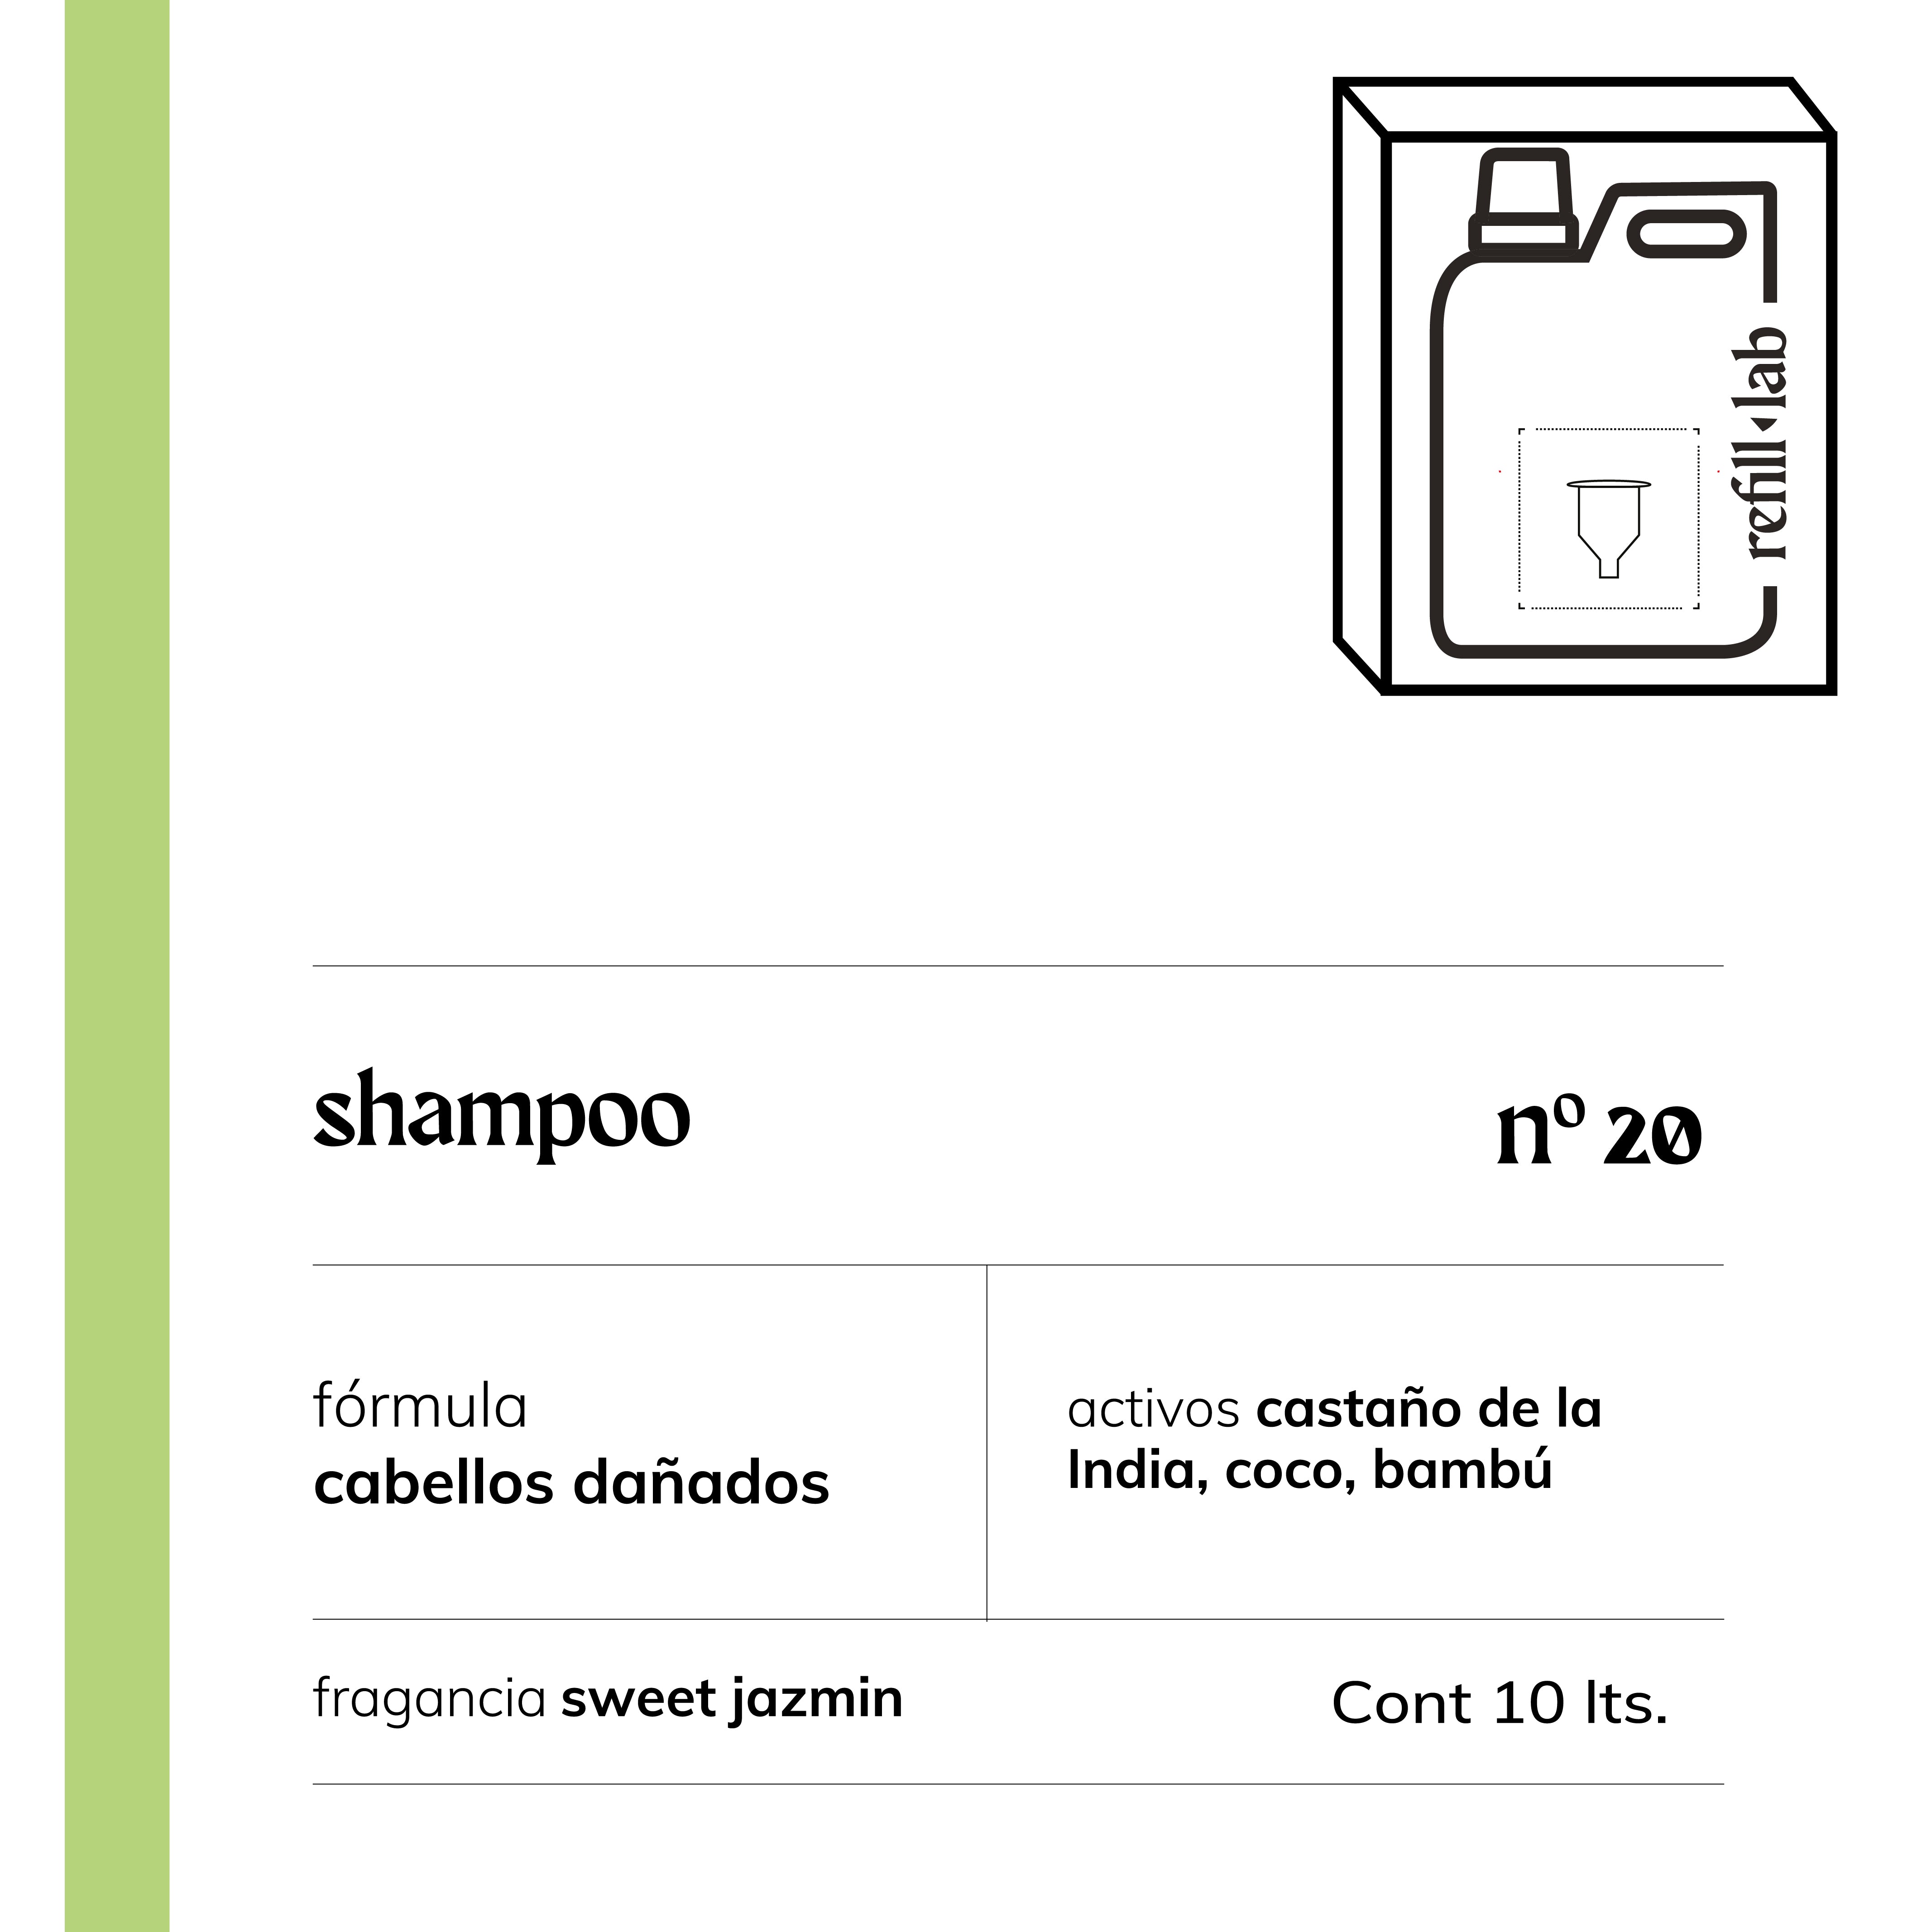 Shampoo sin sulfatos - Cabellos Dañados/Teñidos - Sweet Jazmin - 10 lts.